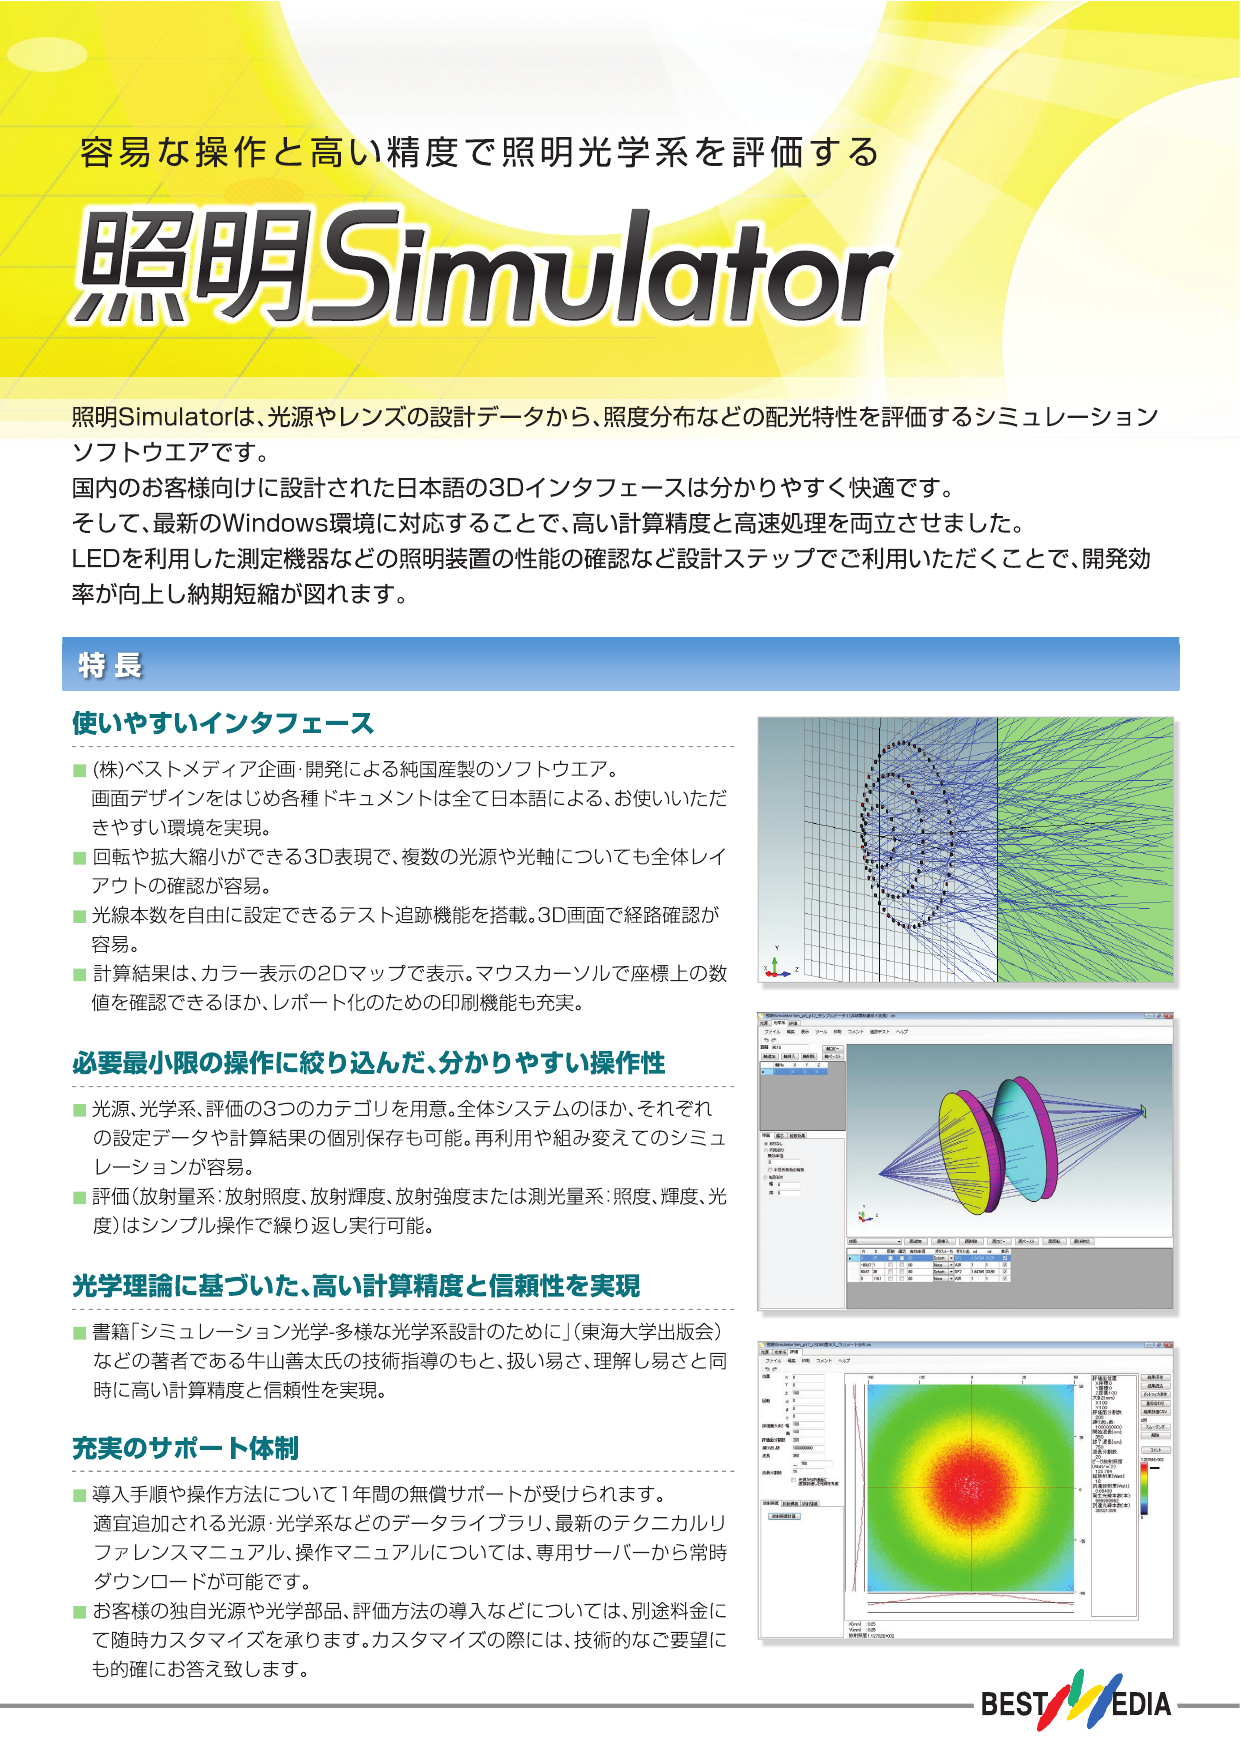 シミュレーションソフトウェア照明simulator総合 株式会社ベストメディア のカタログ無料ダウンロード Aperza Catalog アペルザカタログ ものづくり産業向けカタログサイト